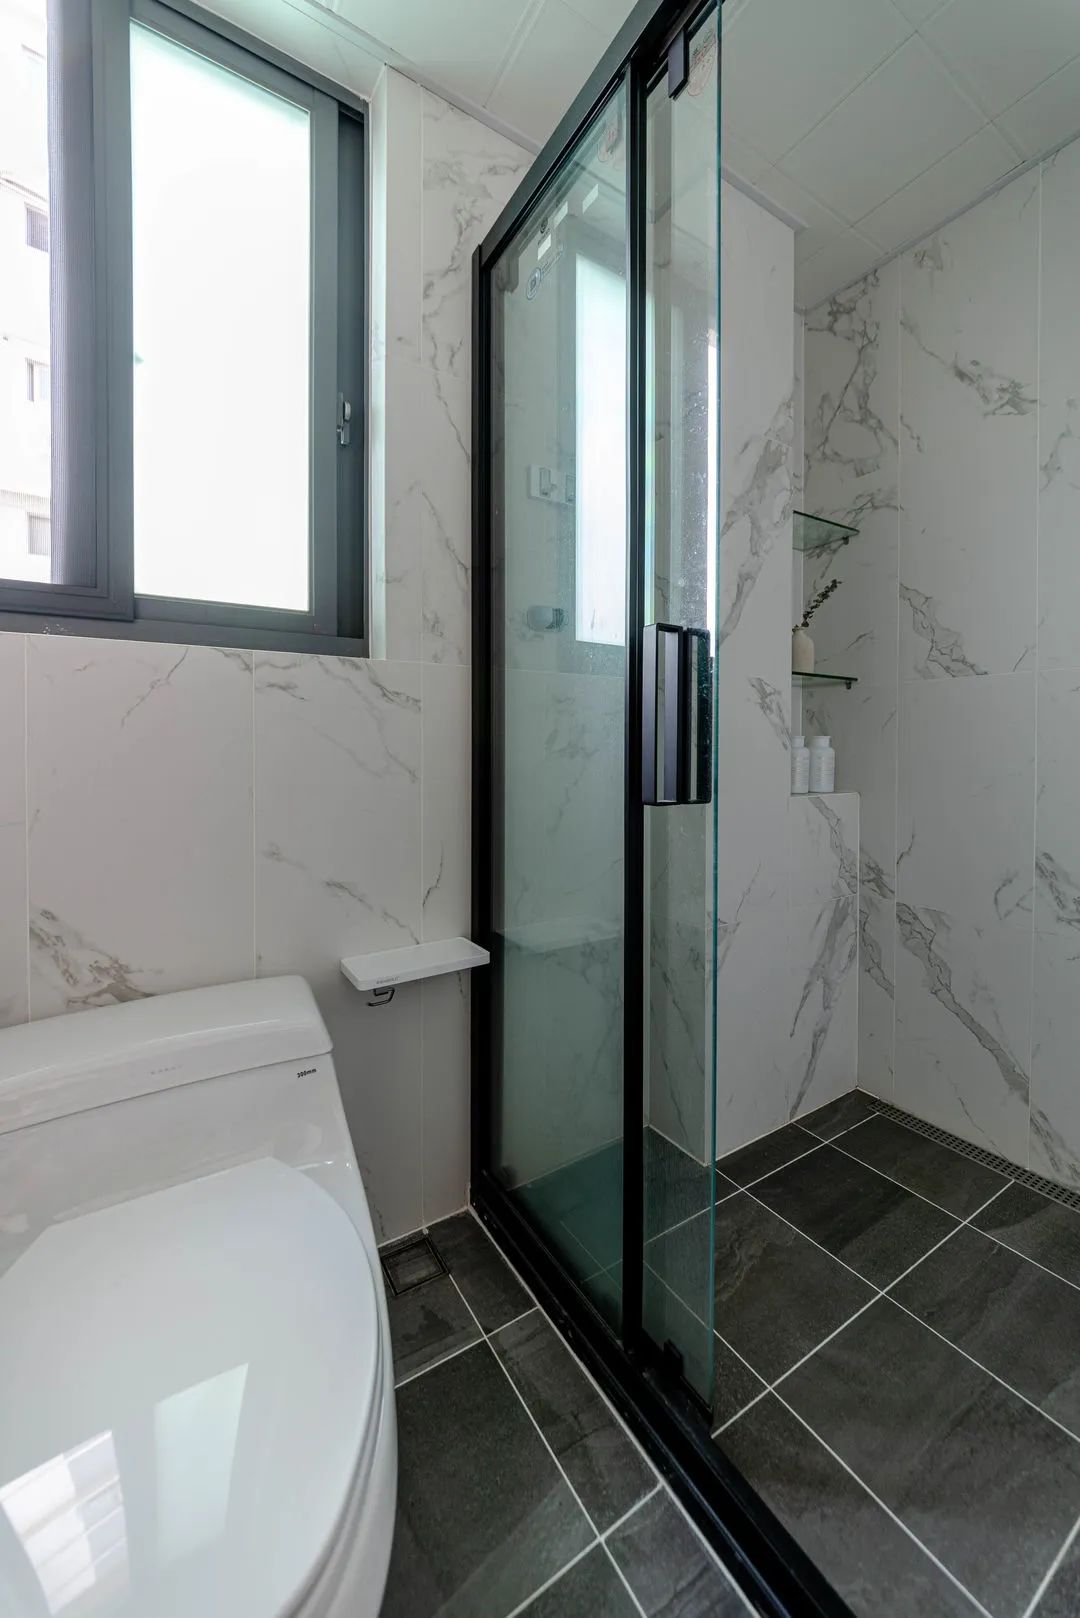 淋浴房买的三联动推拉门,进淋浴区的空间更舒适.